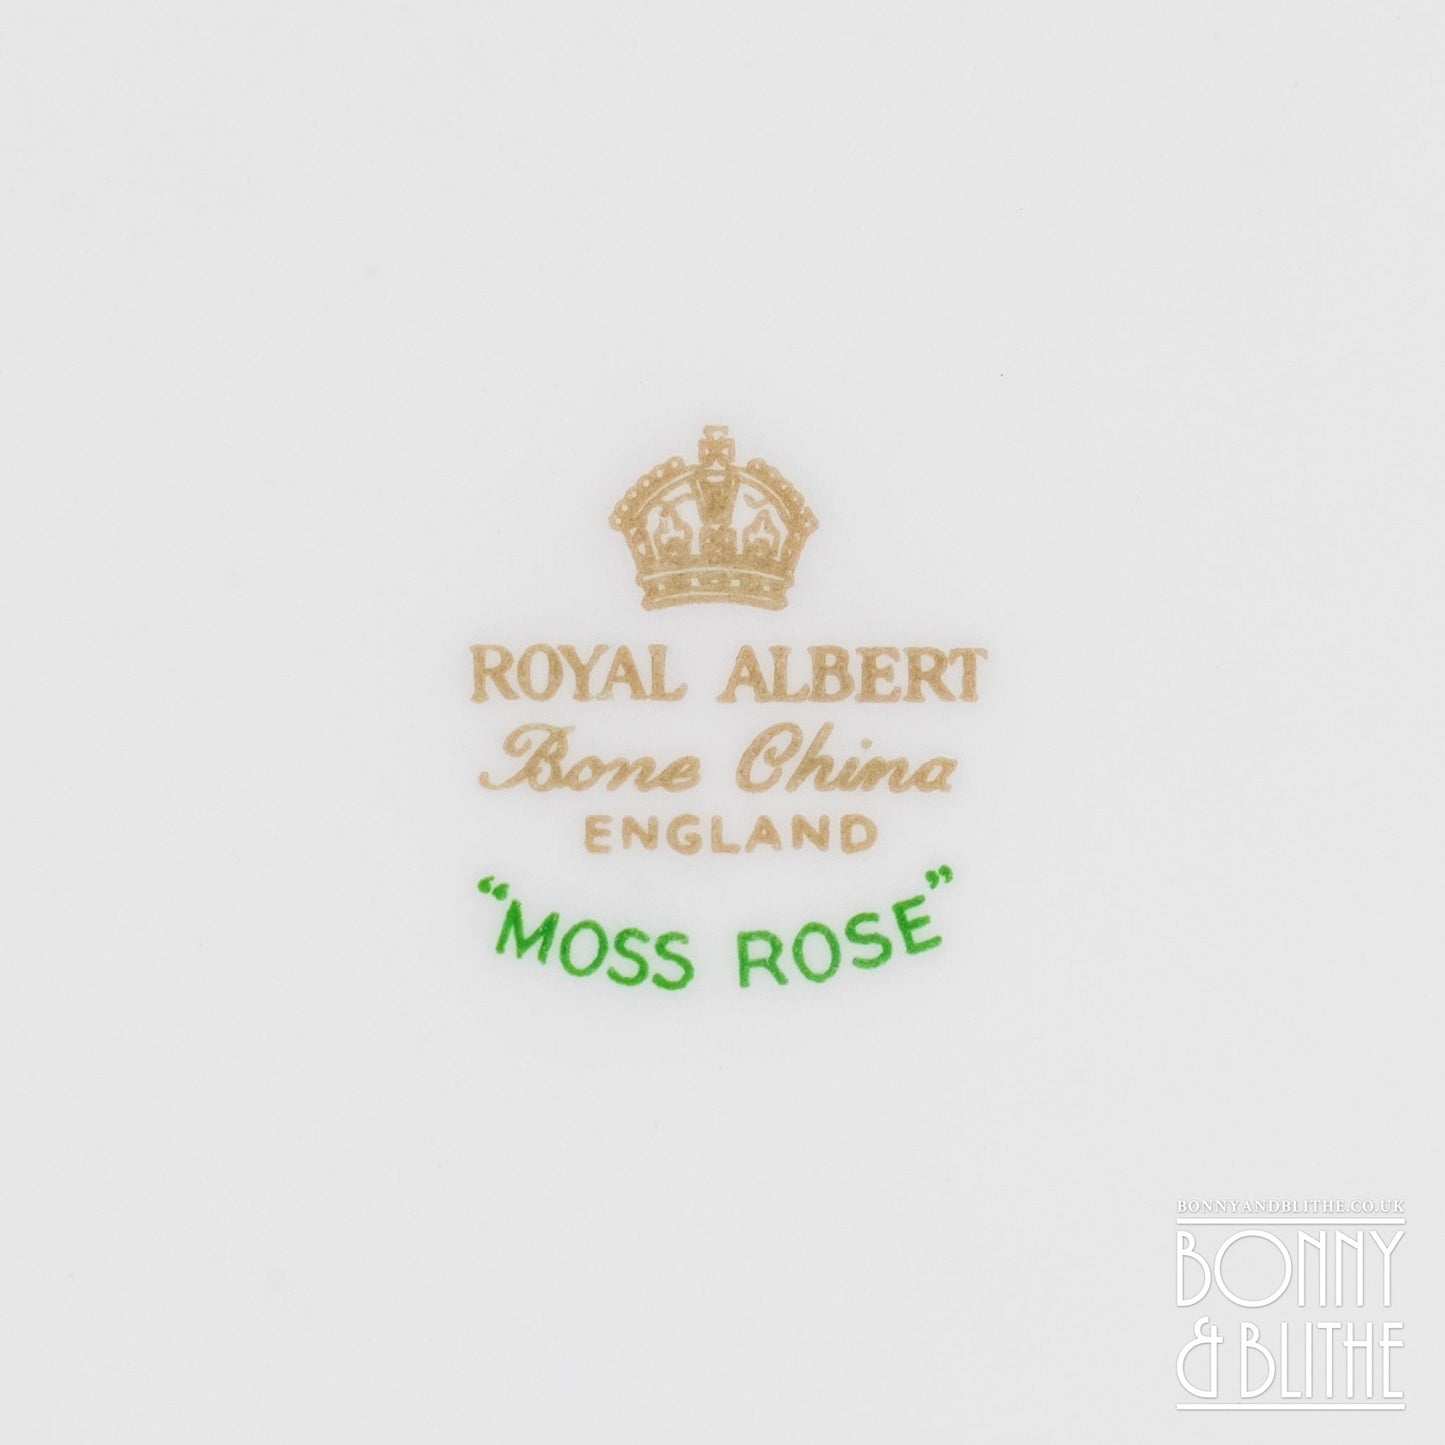 Royal Albert Moss Rose Sandwich Plate